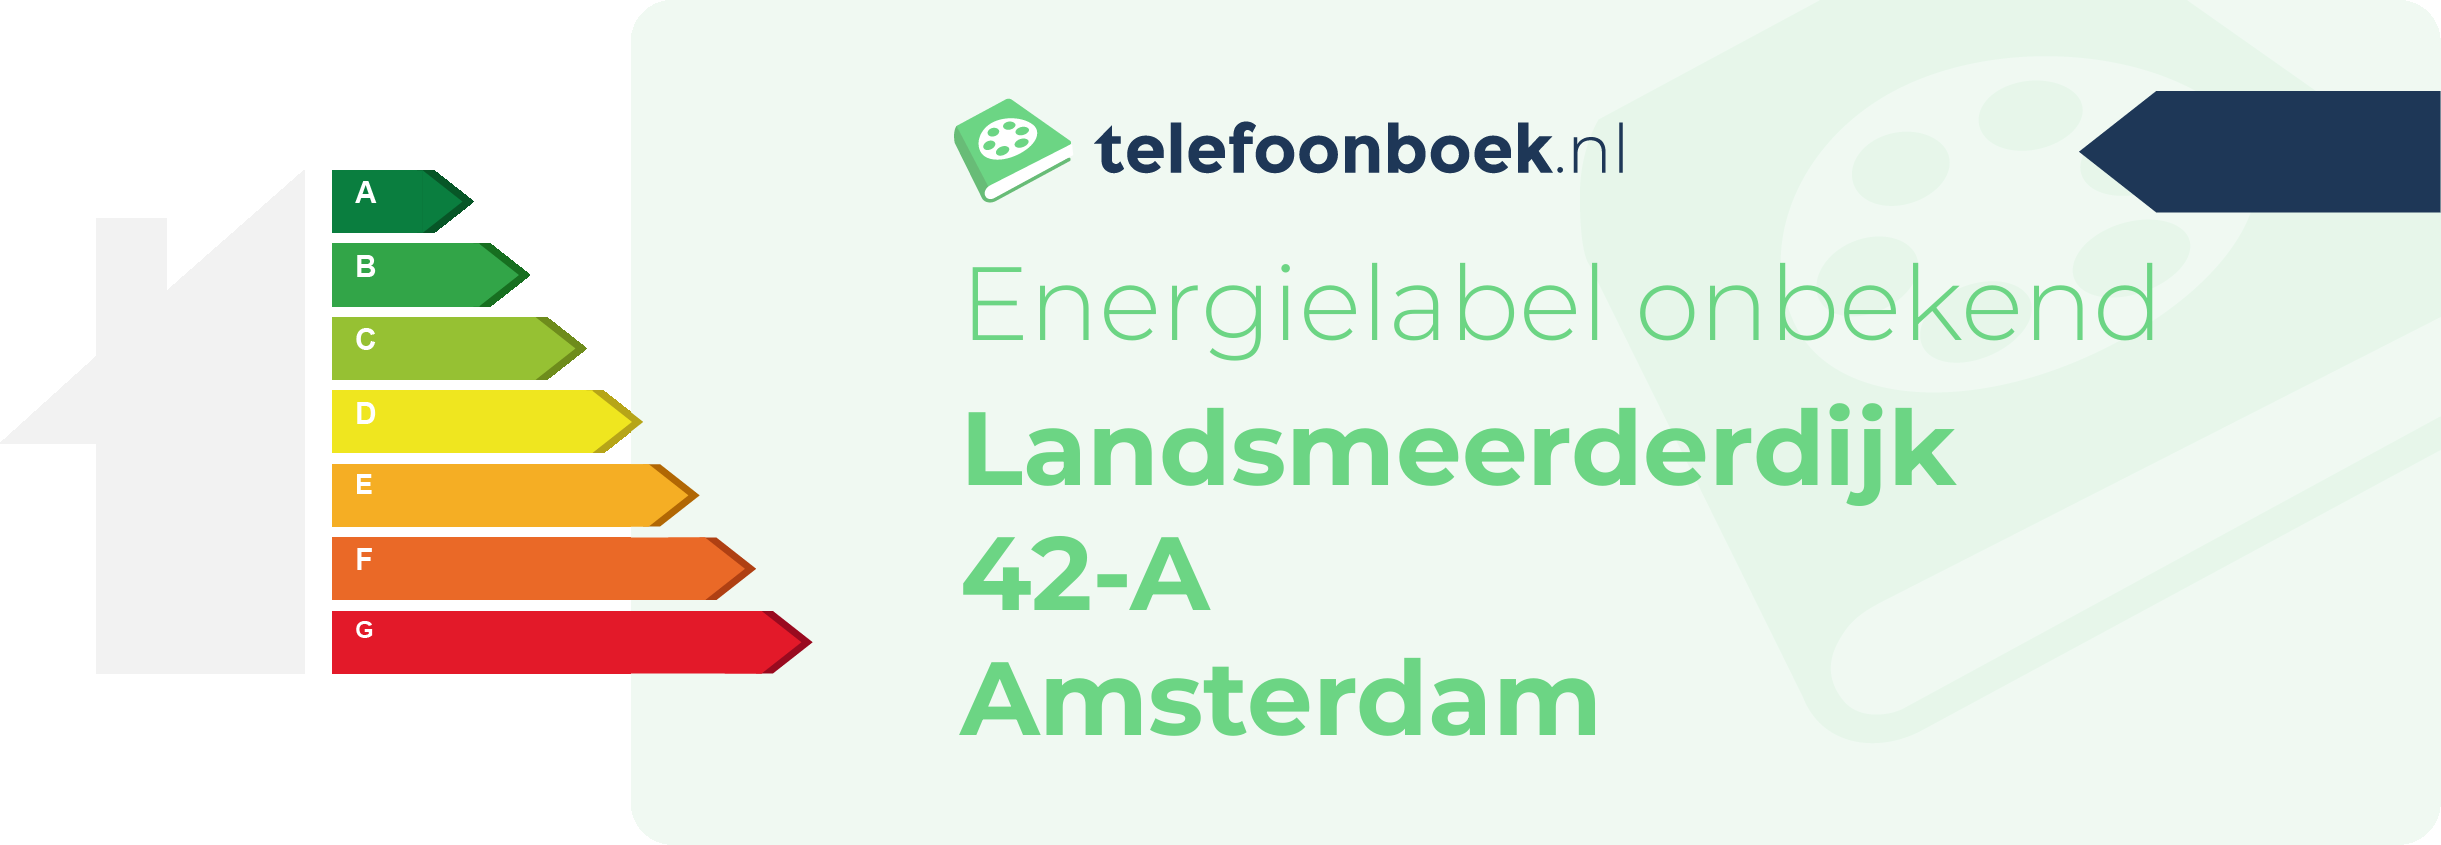 Energielabel Landsmeerderdijk 42-A Amsterdam